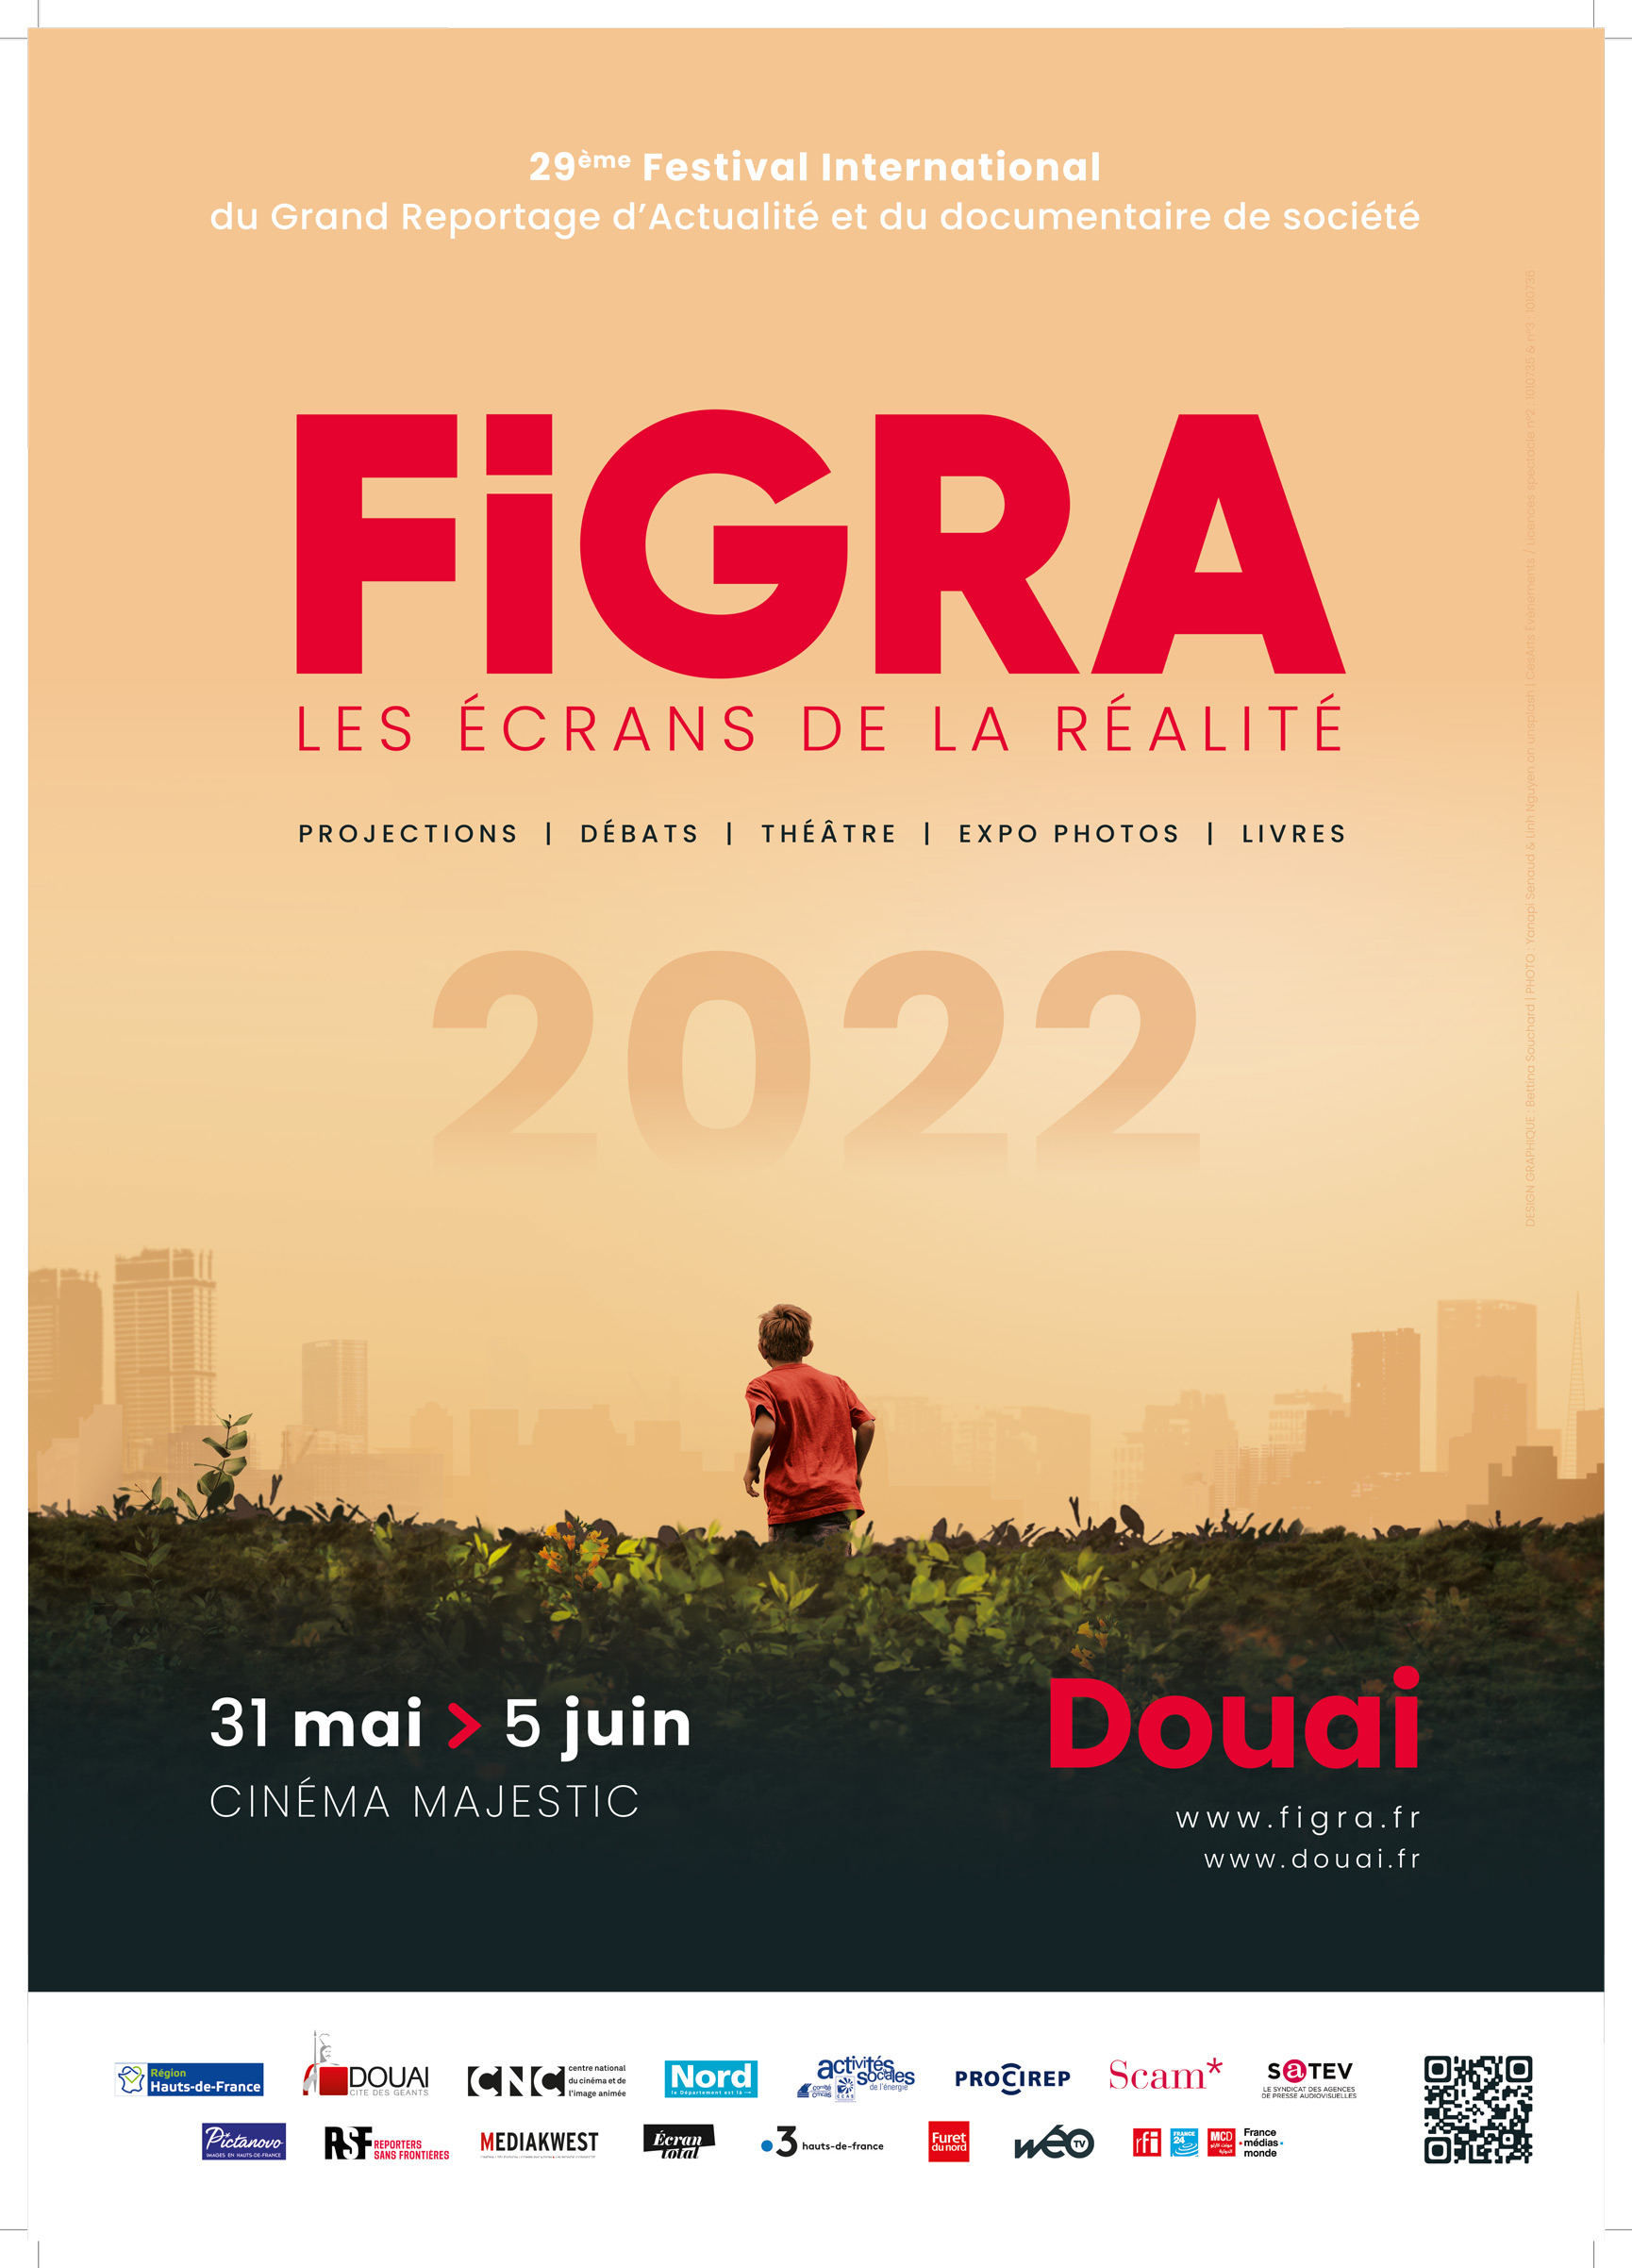 FIGRA 2022, 29ème édition – Douai, 31 mai – 5 juin 2022